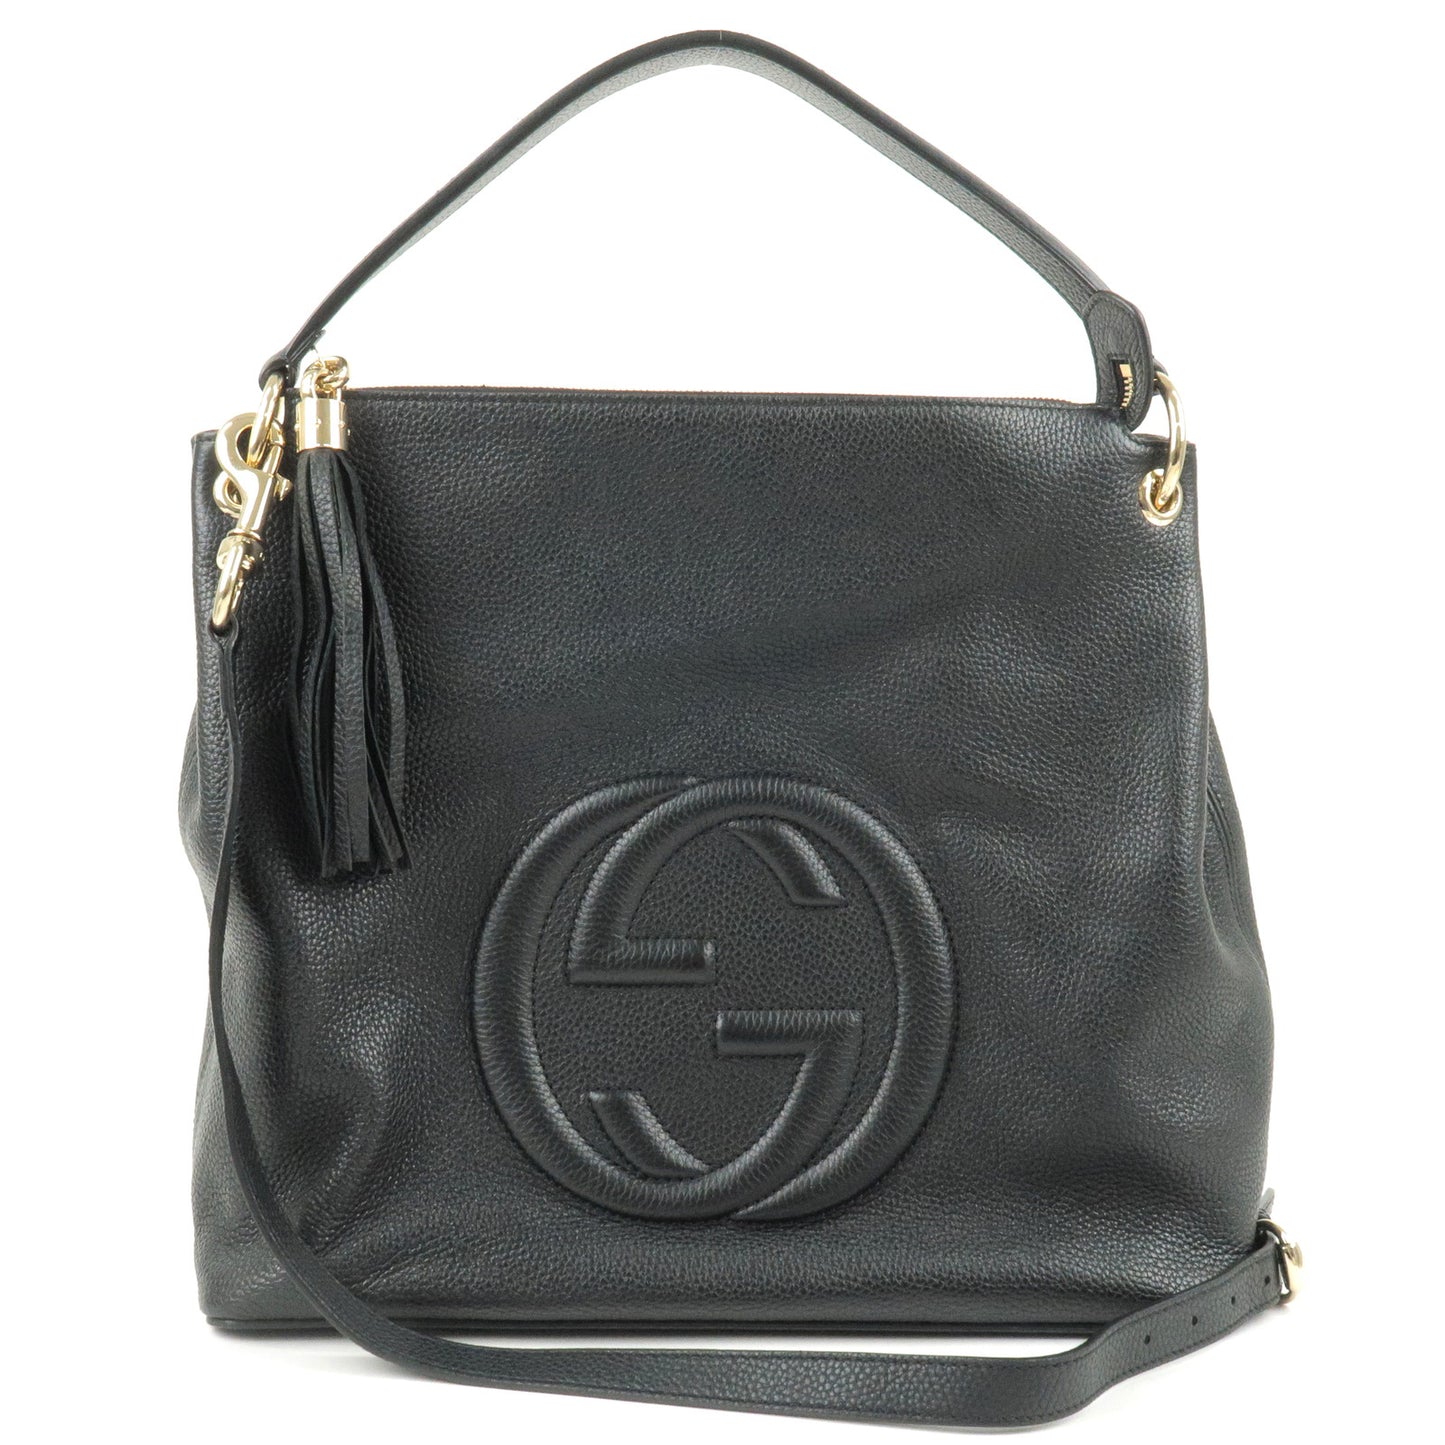 GUCCI-SOHO-Interlocking-G-Leather-Shoudler-Bag-Black-536194